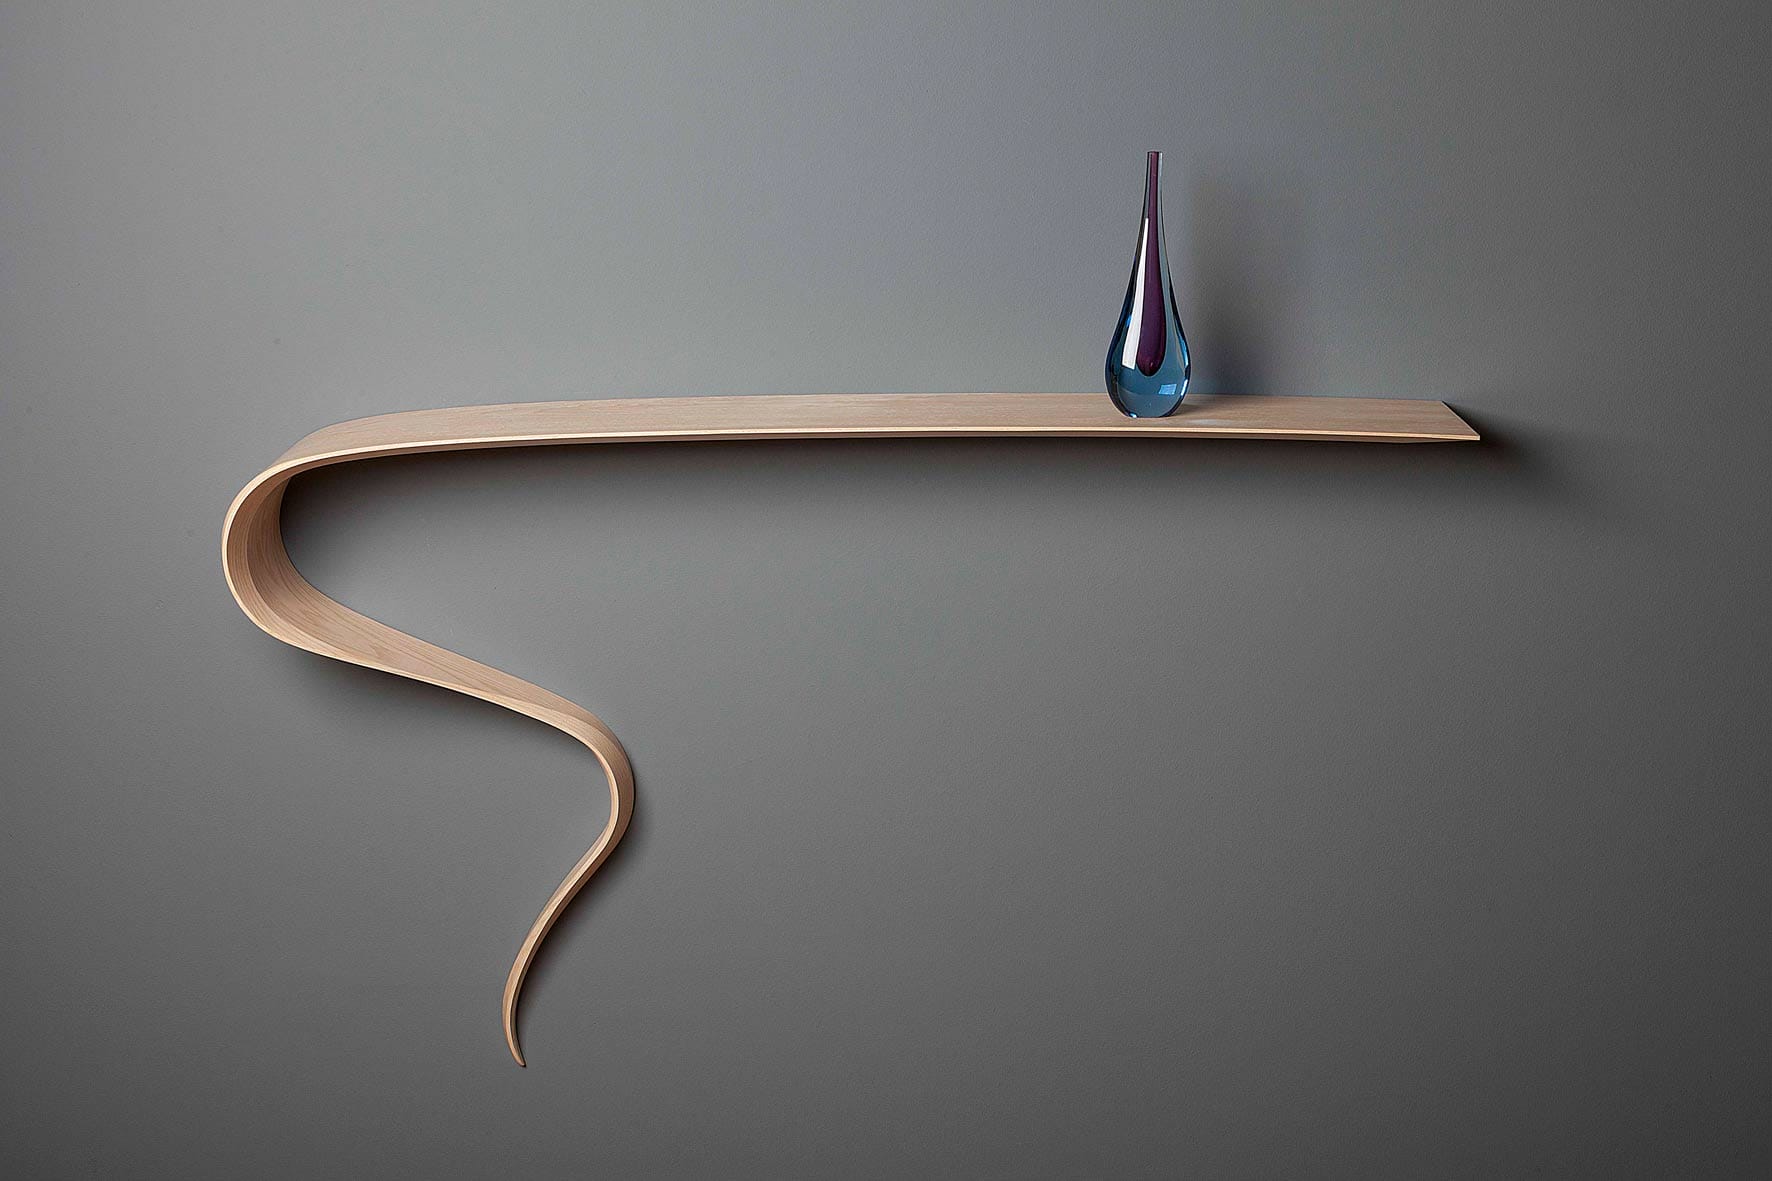 Genie sculptural floating wooden shelf